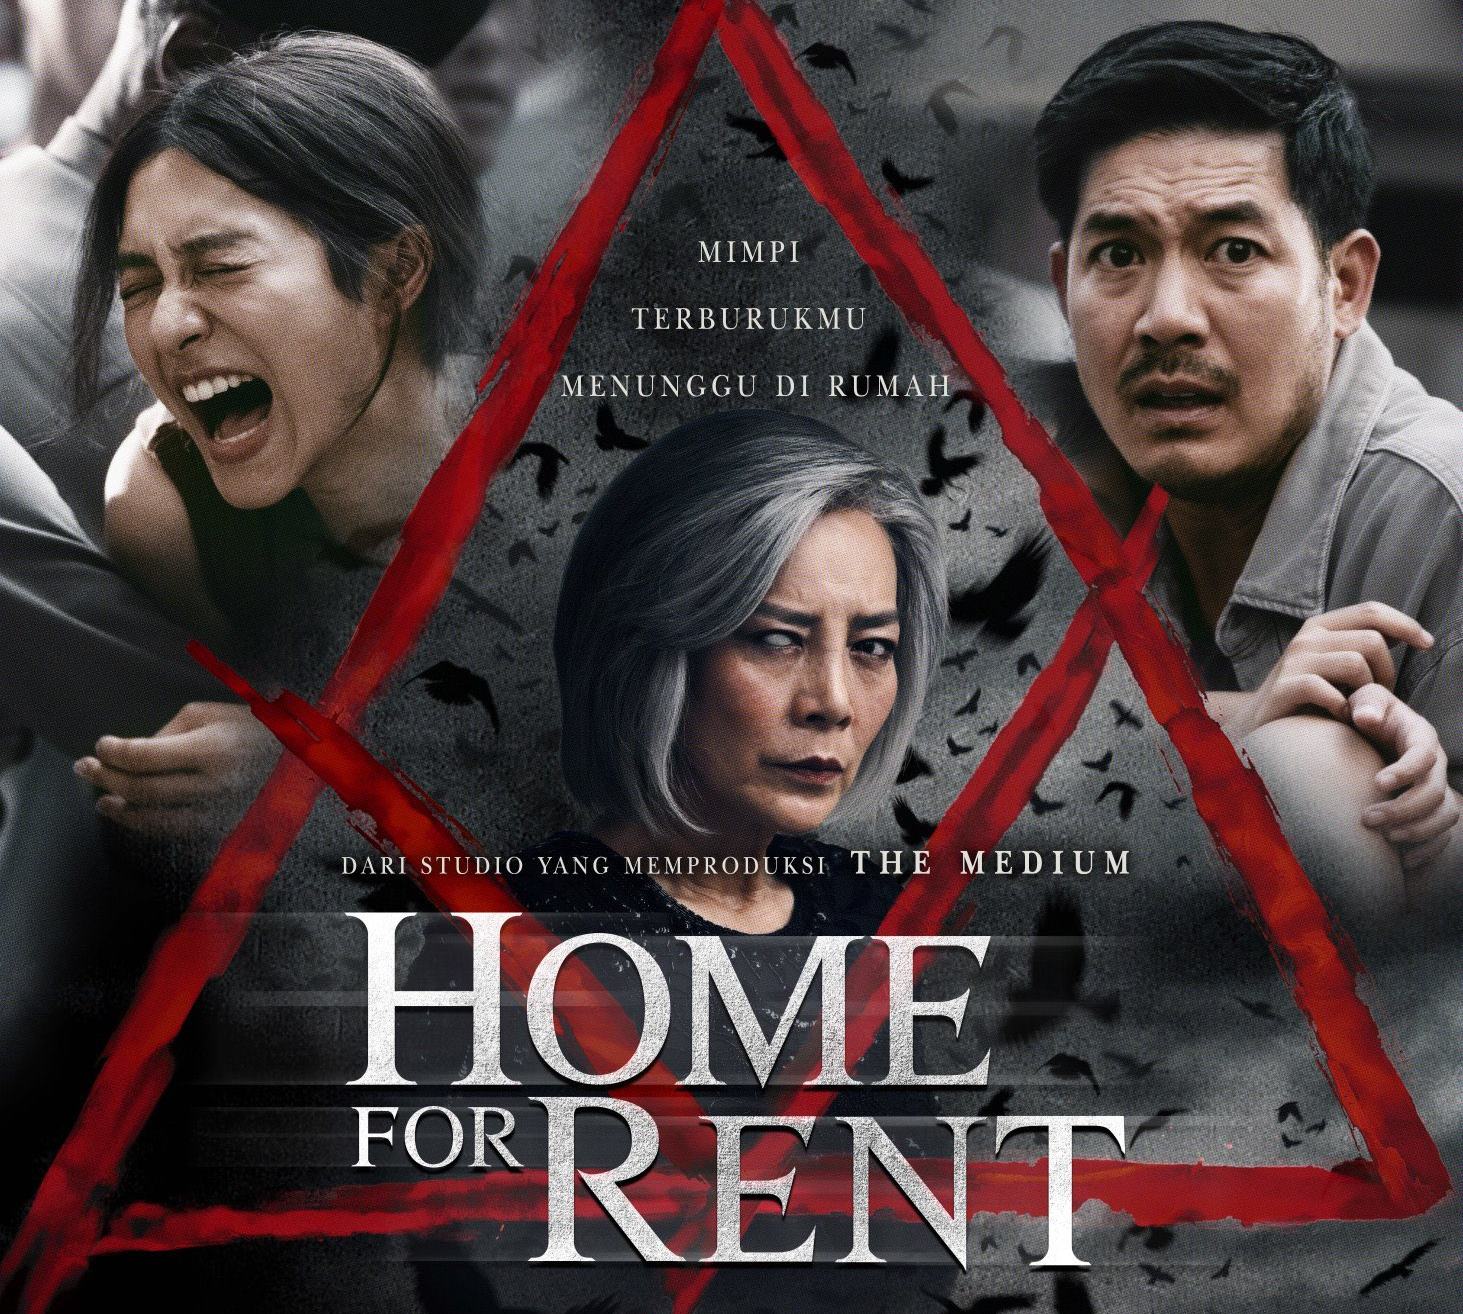 Sinopsis Home For Rent, Film Horor Thailand yang Tayang di Bioskop Platinum Cineplex Kebumen Mulai Hari Ini